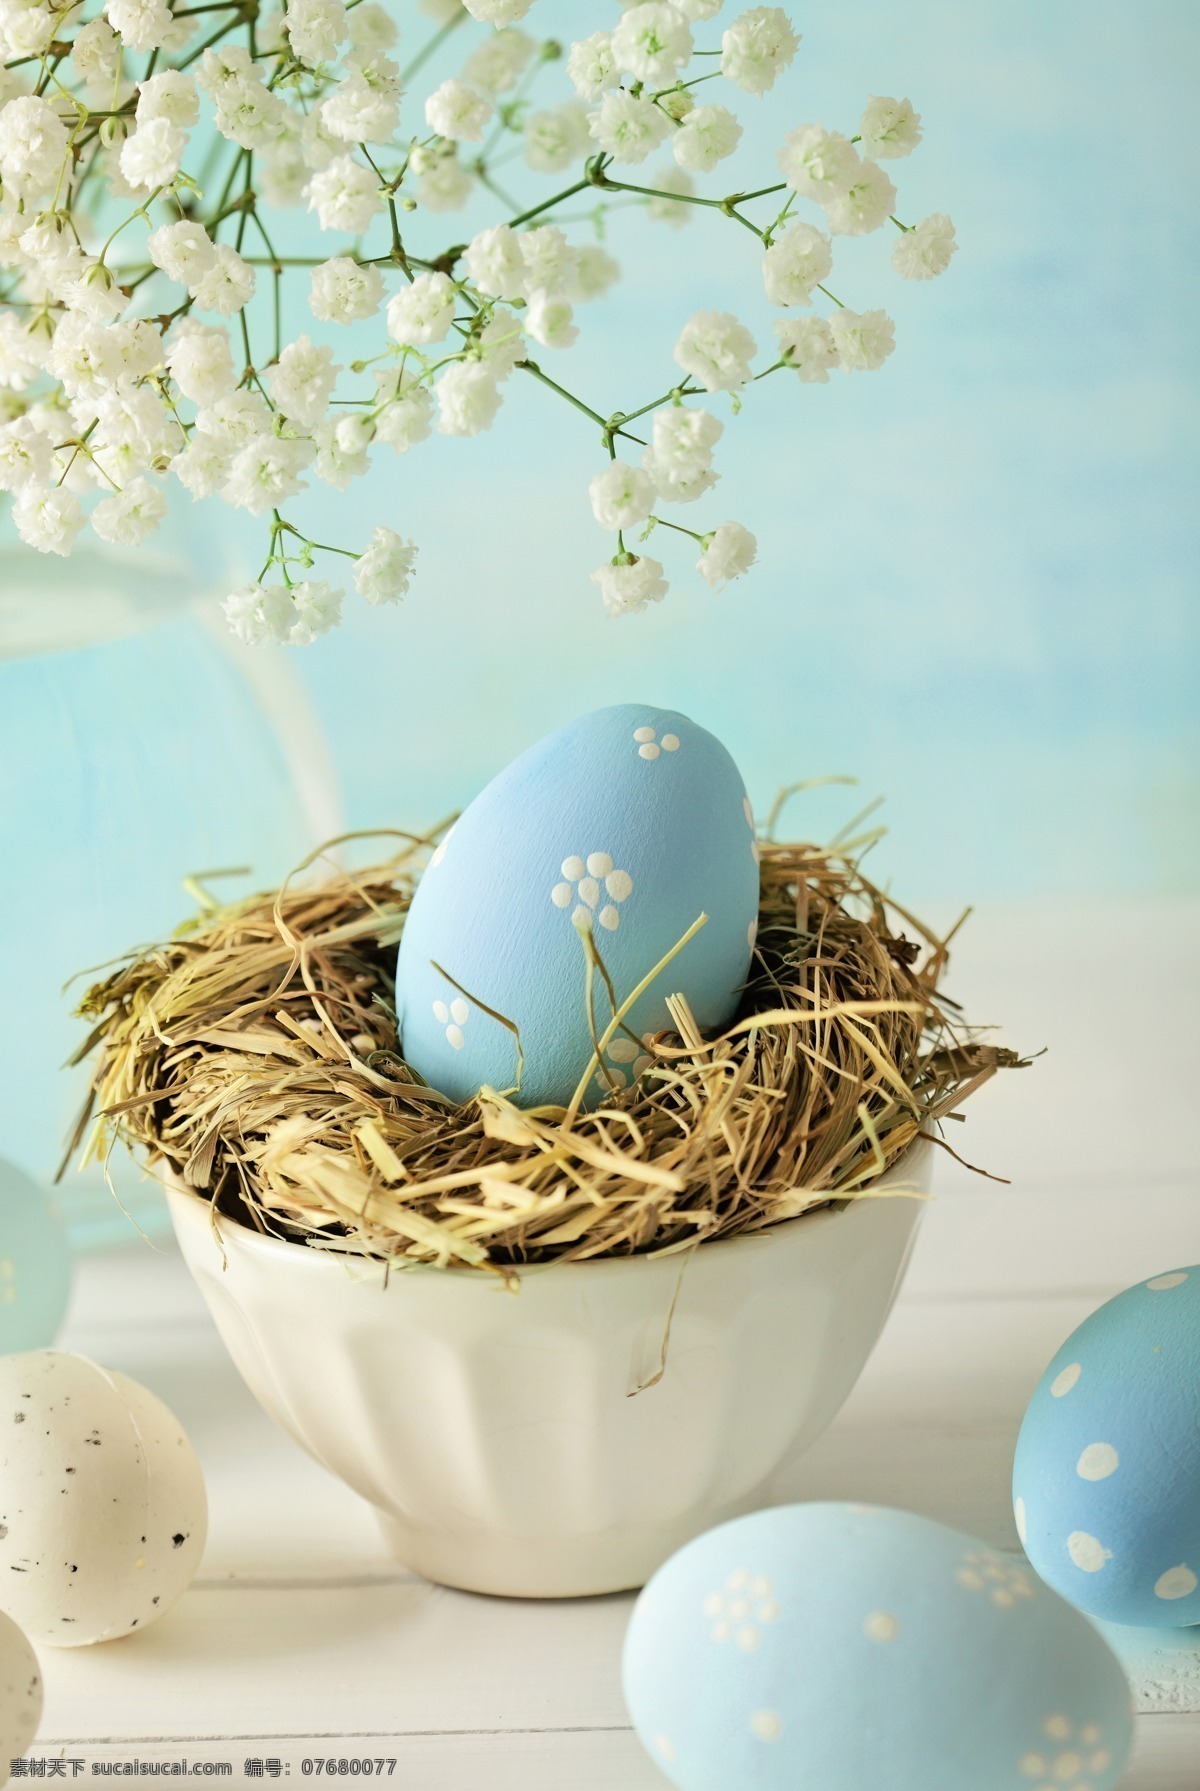 碗 里 蓝色 彩蛋 鲜花 复活节 节日庆典 生活百科